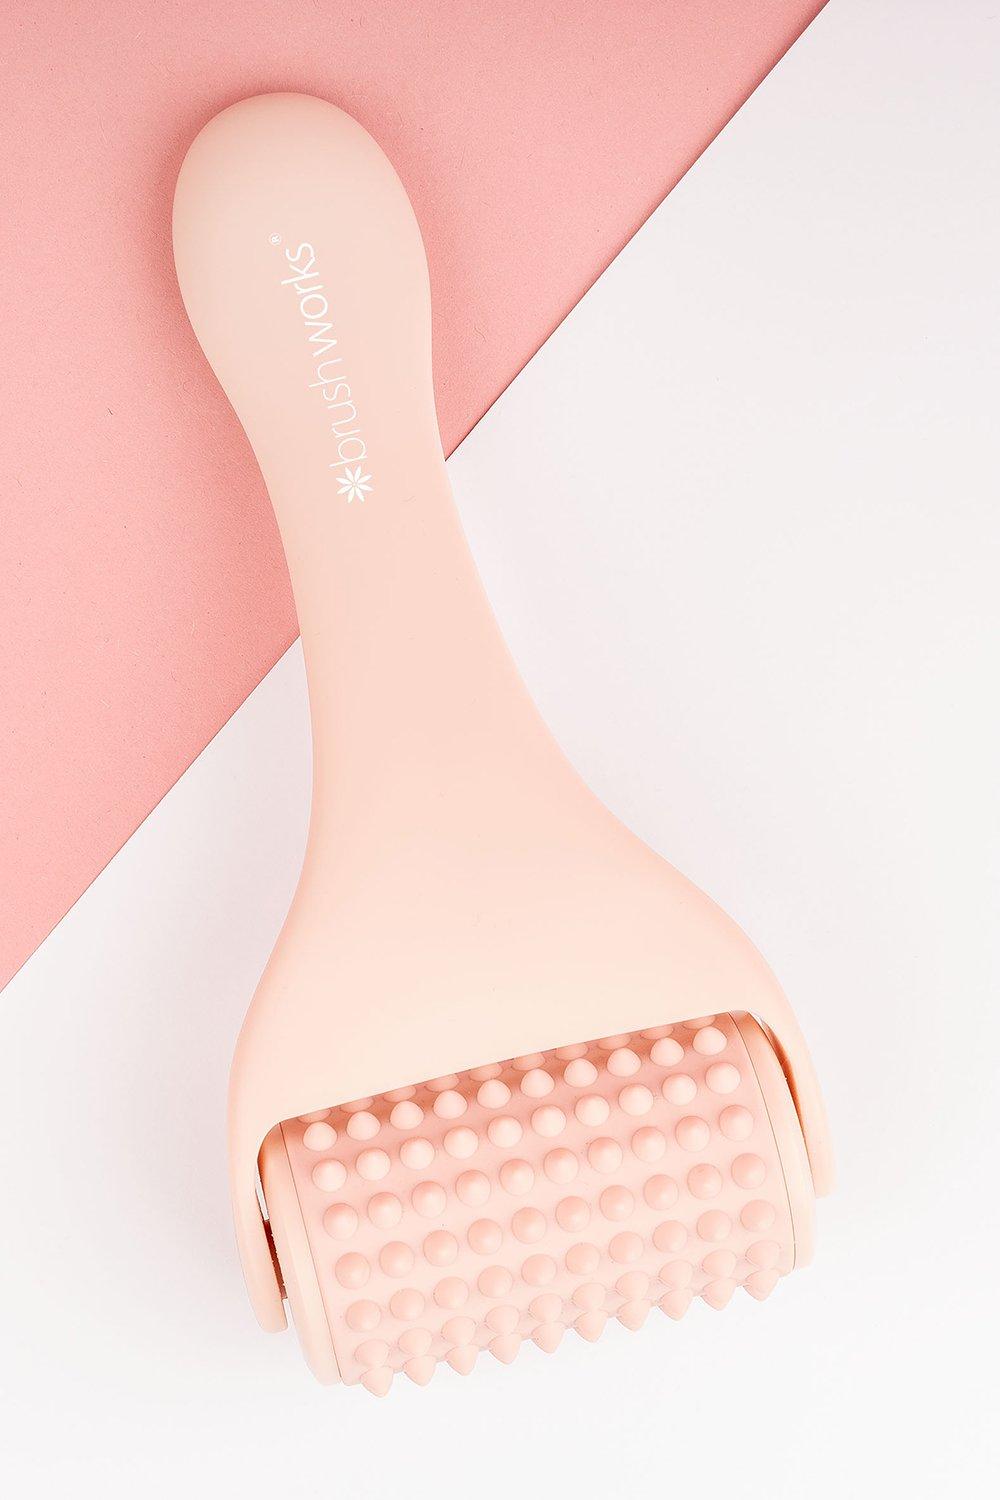 Image of Brushworks - Body Roller massaggiante, Pink